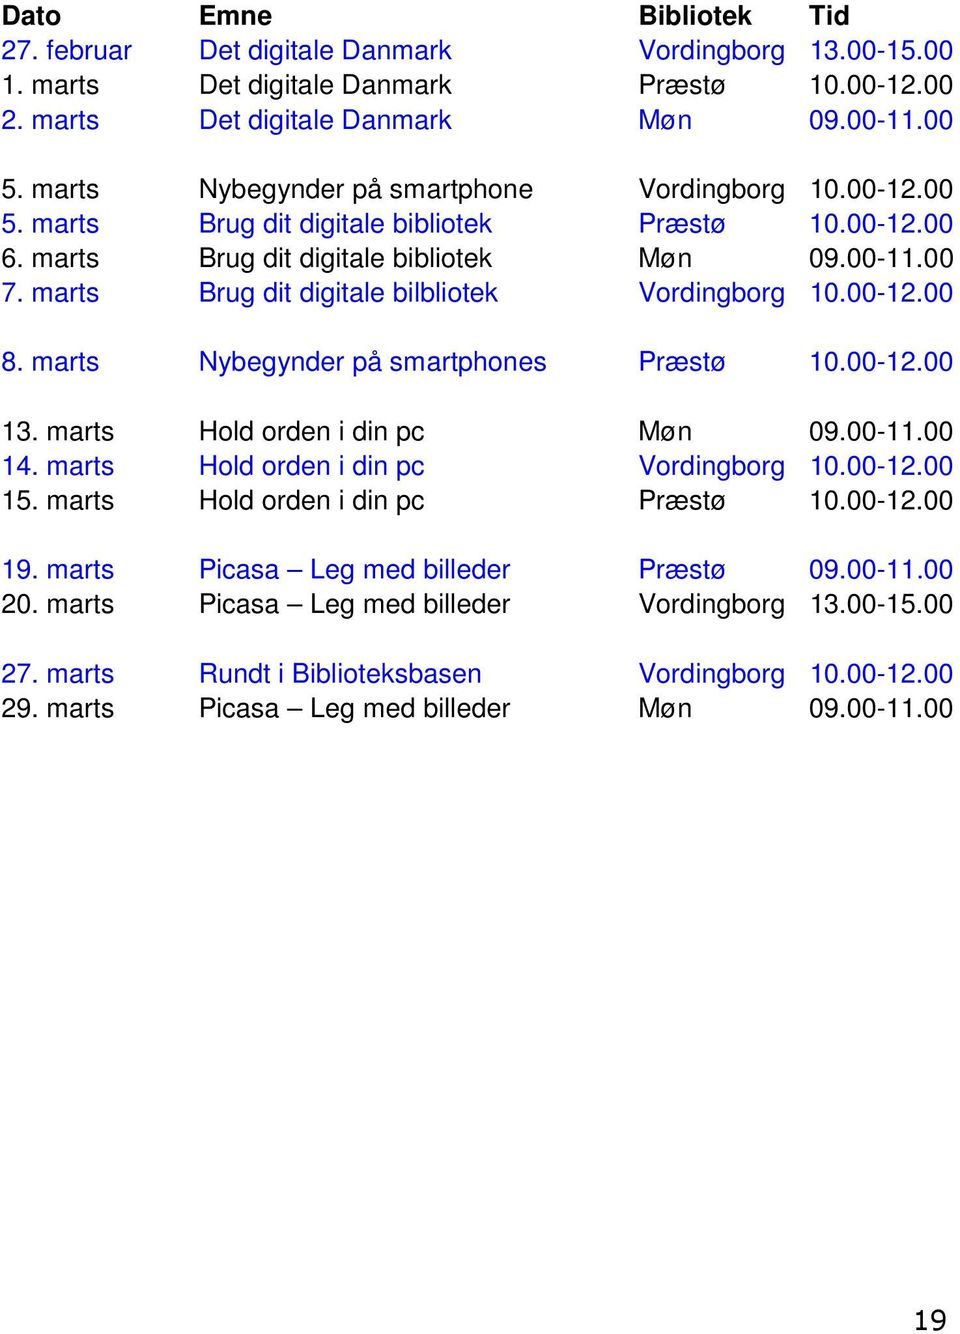 marts Brug dit digitale bilbliotek Vordingborg 10.00-12.00 8. marts Nybegynder på smartphones Præstø 10.00-12.00 13. marts Hold orden i din pc Møn 09.00-11.00 14.